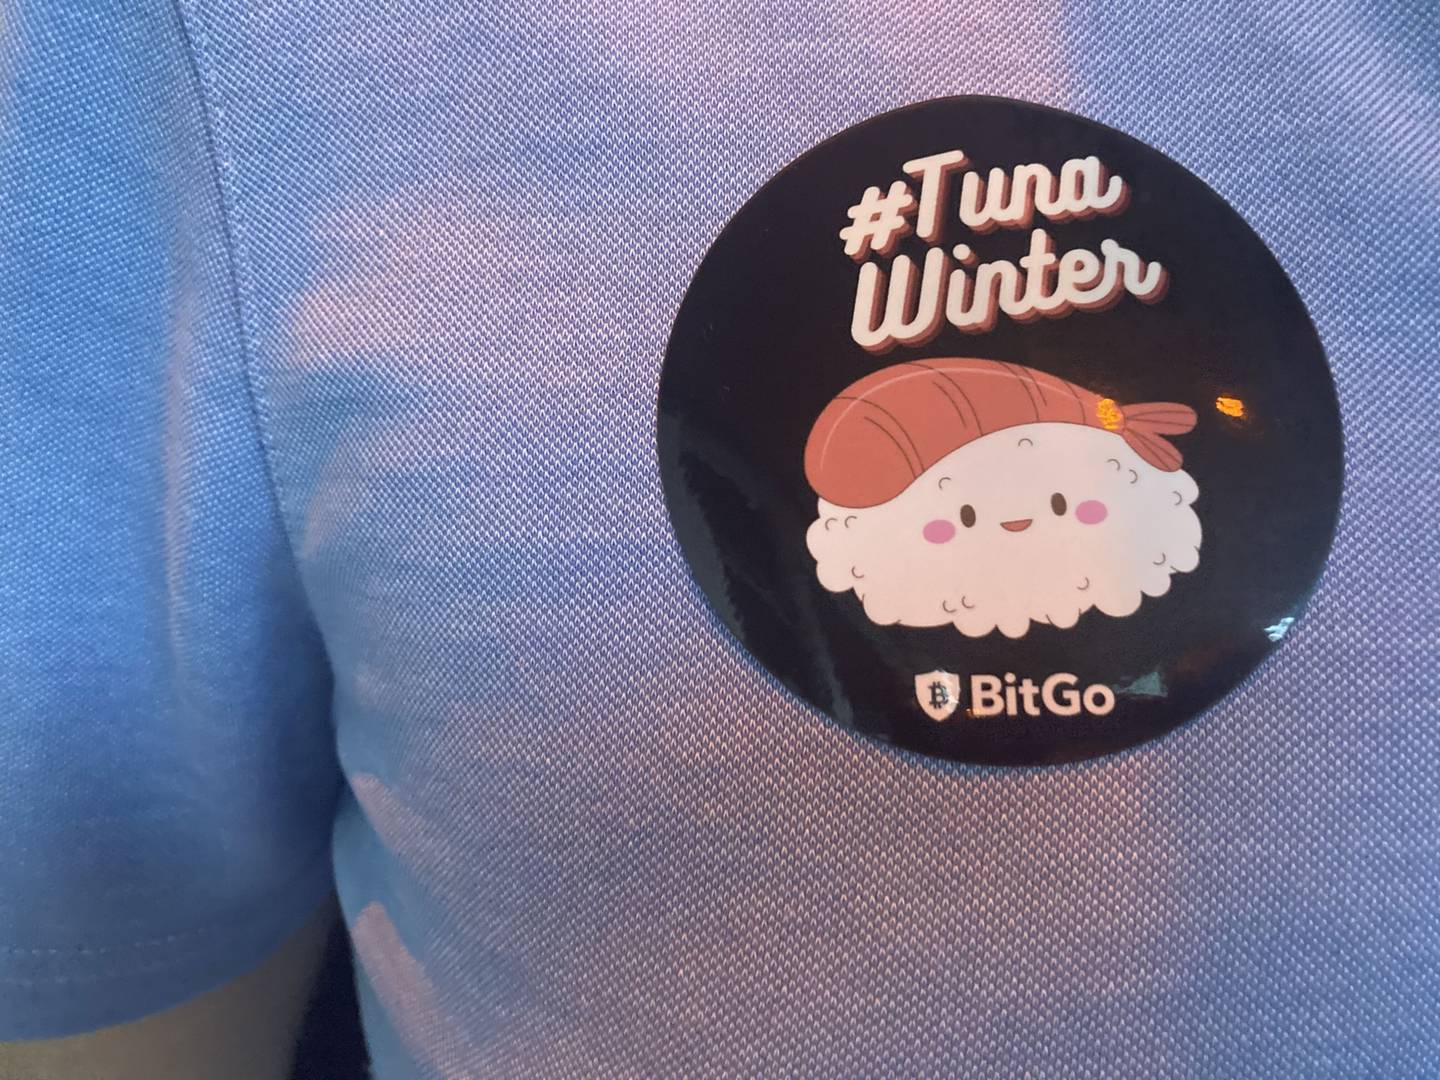 BitGo party-goer with #TunaWinter stickerdfd